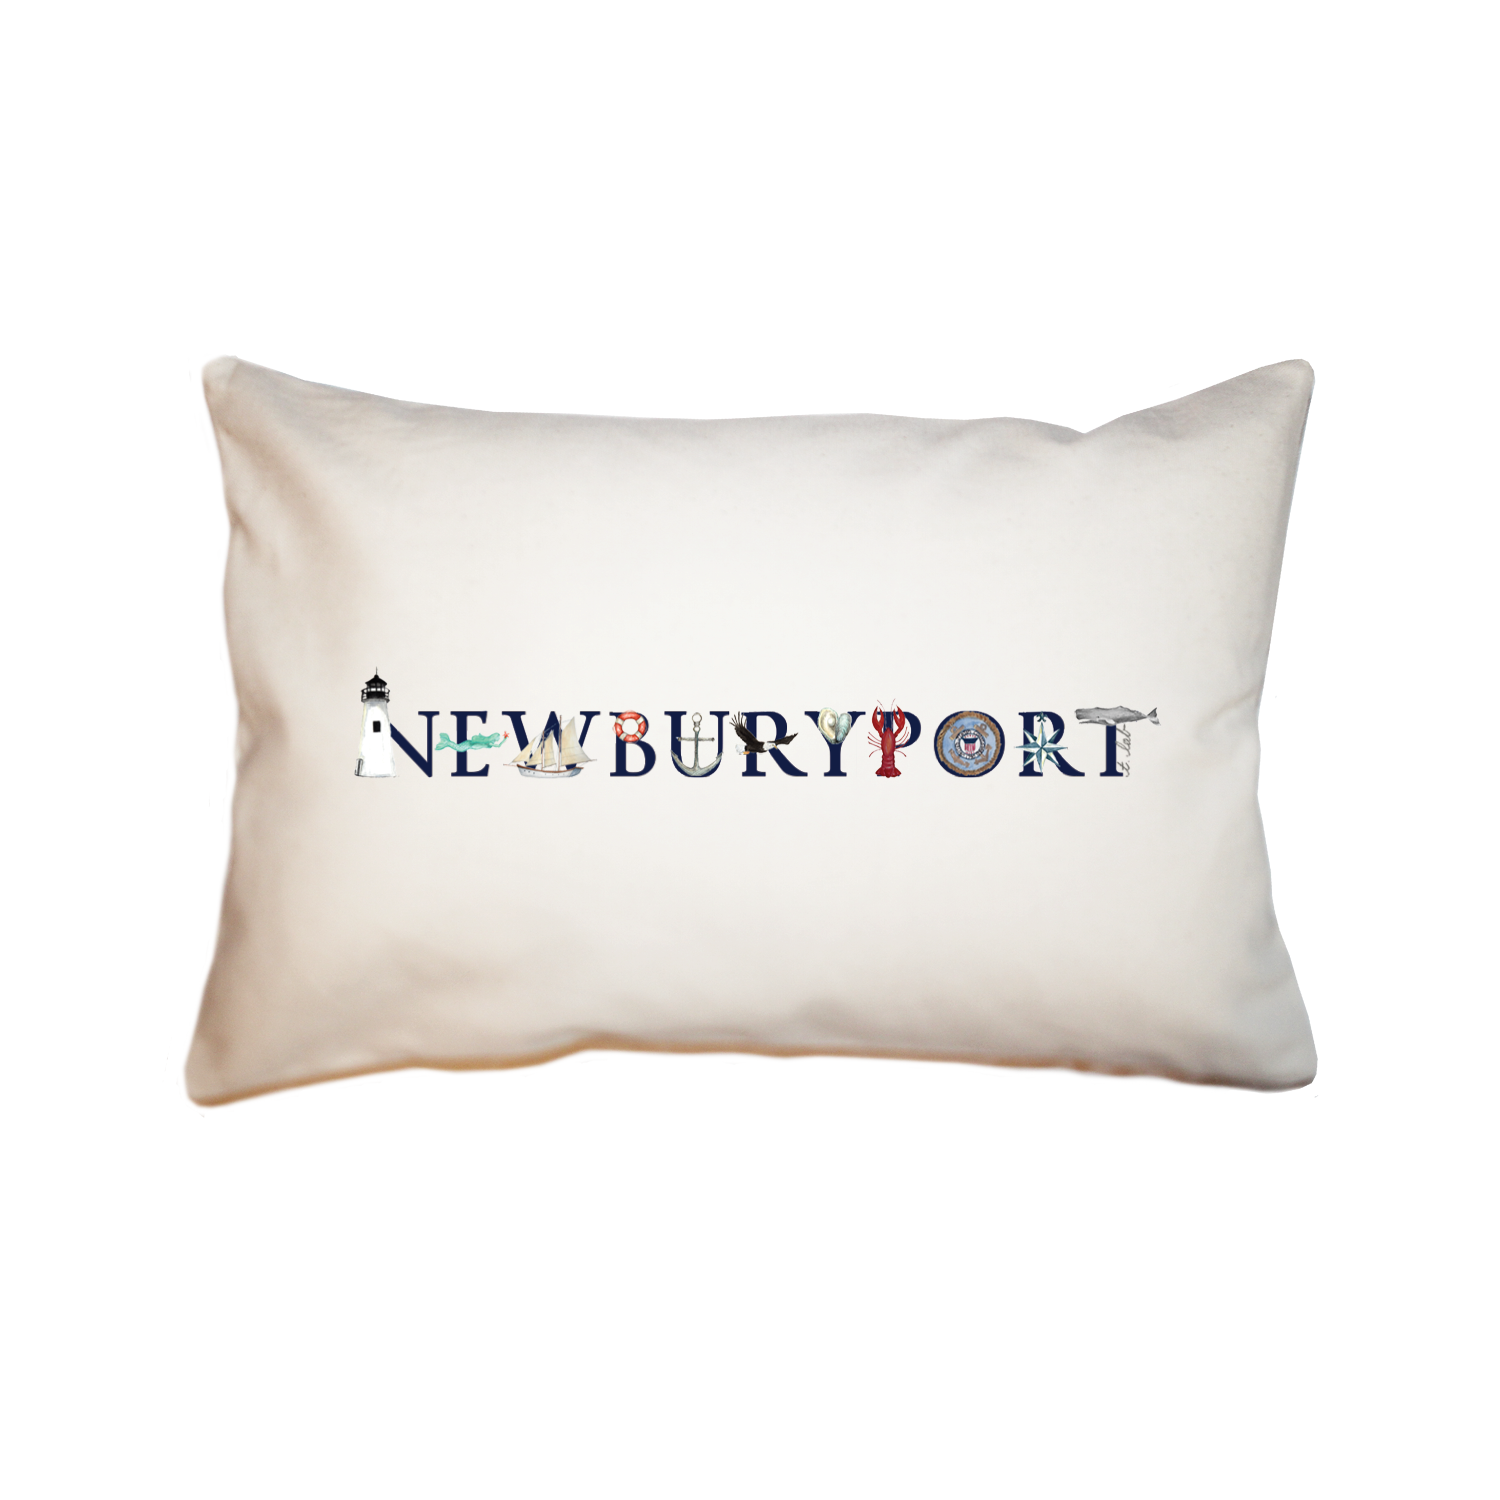 newburyport large rectangle pillow